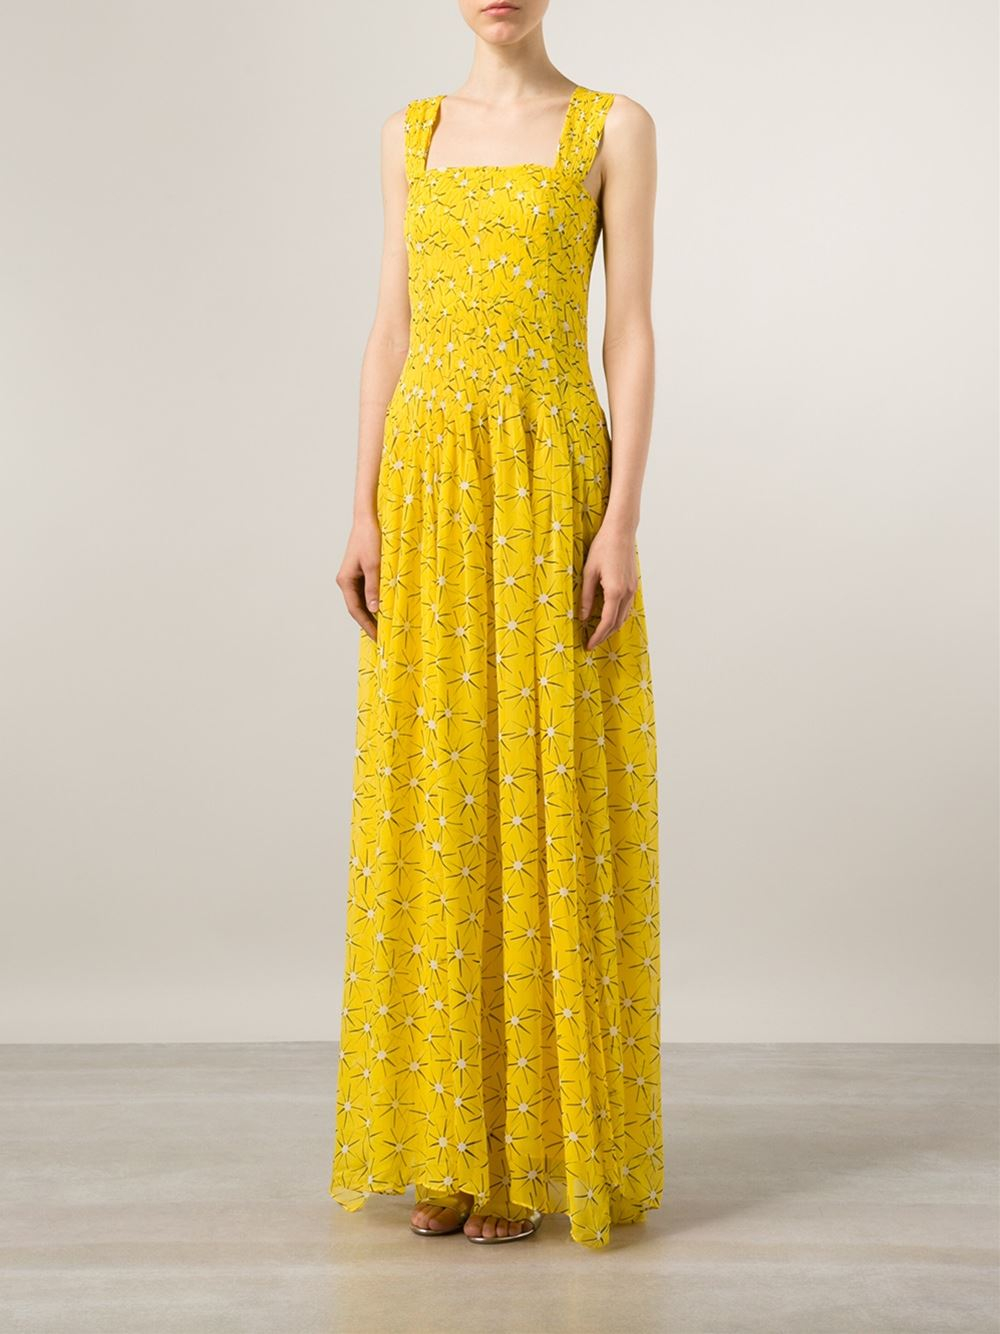 Diane von furstenberg 'lillie' Pleated Chiffon Dress in Yellow (yellow ...